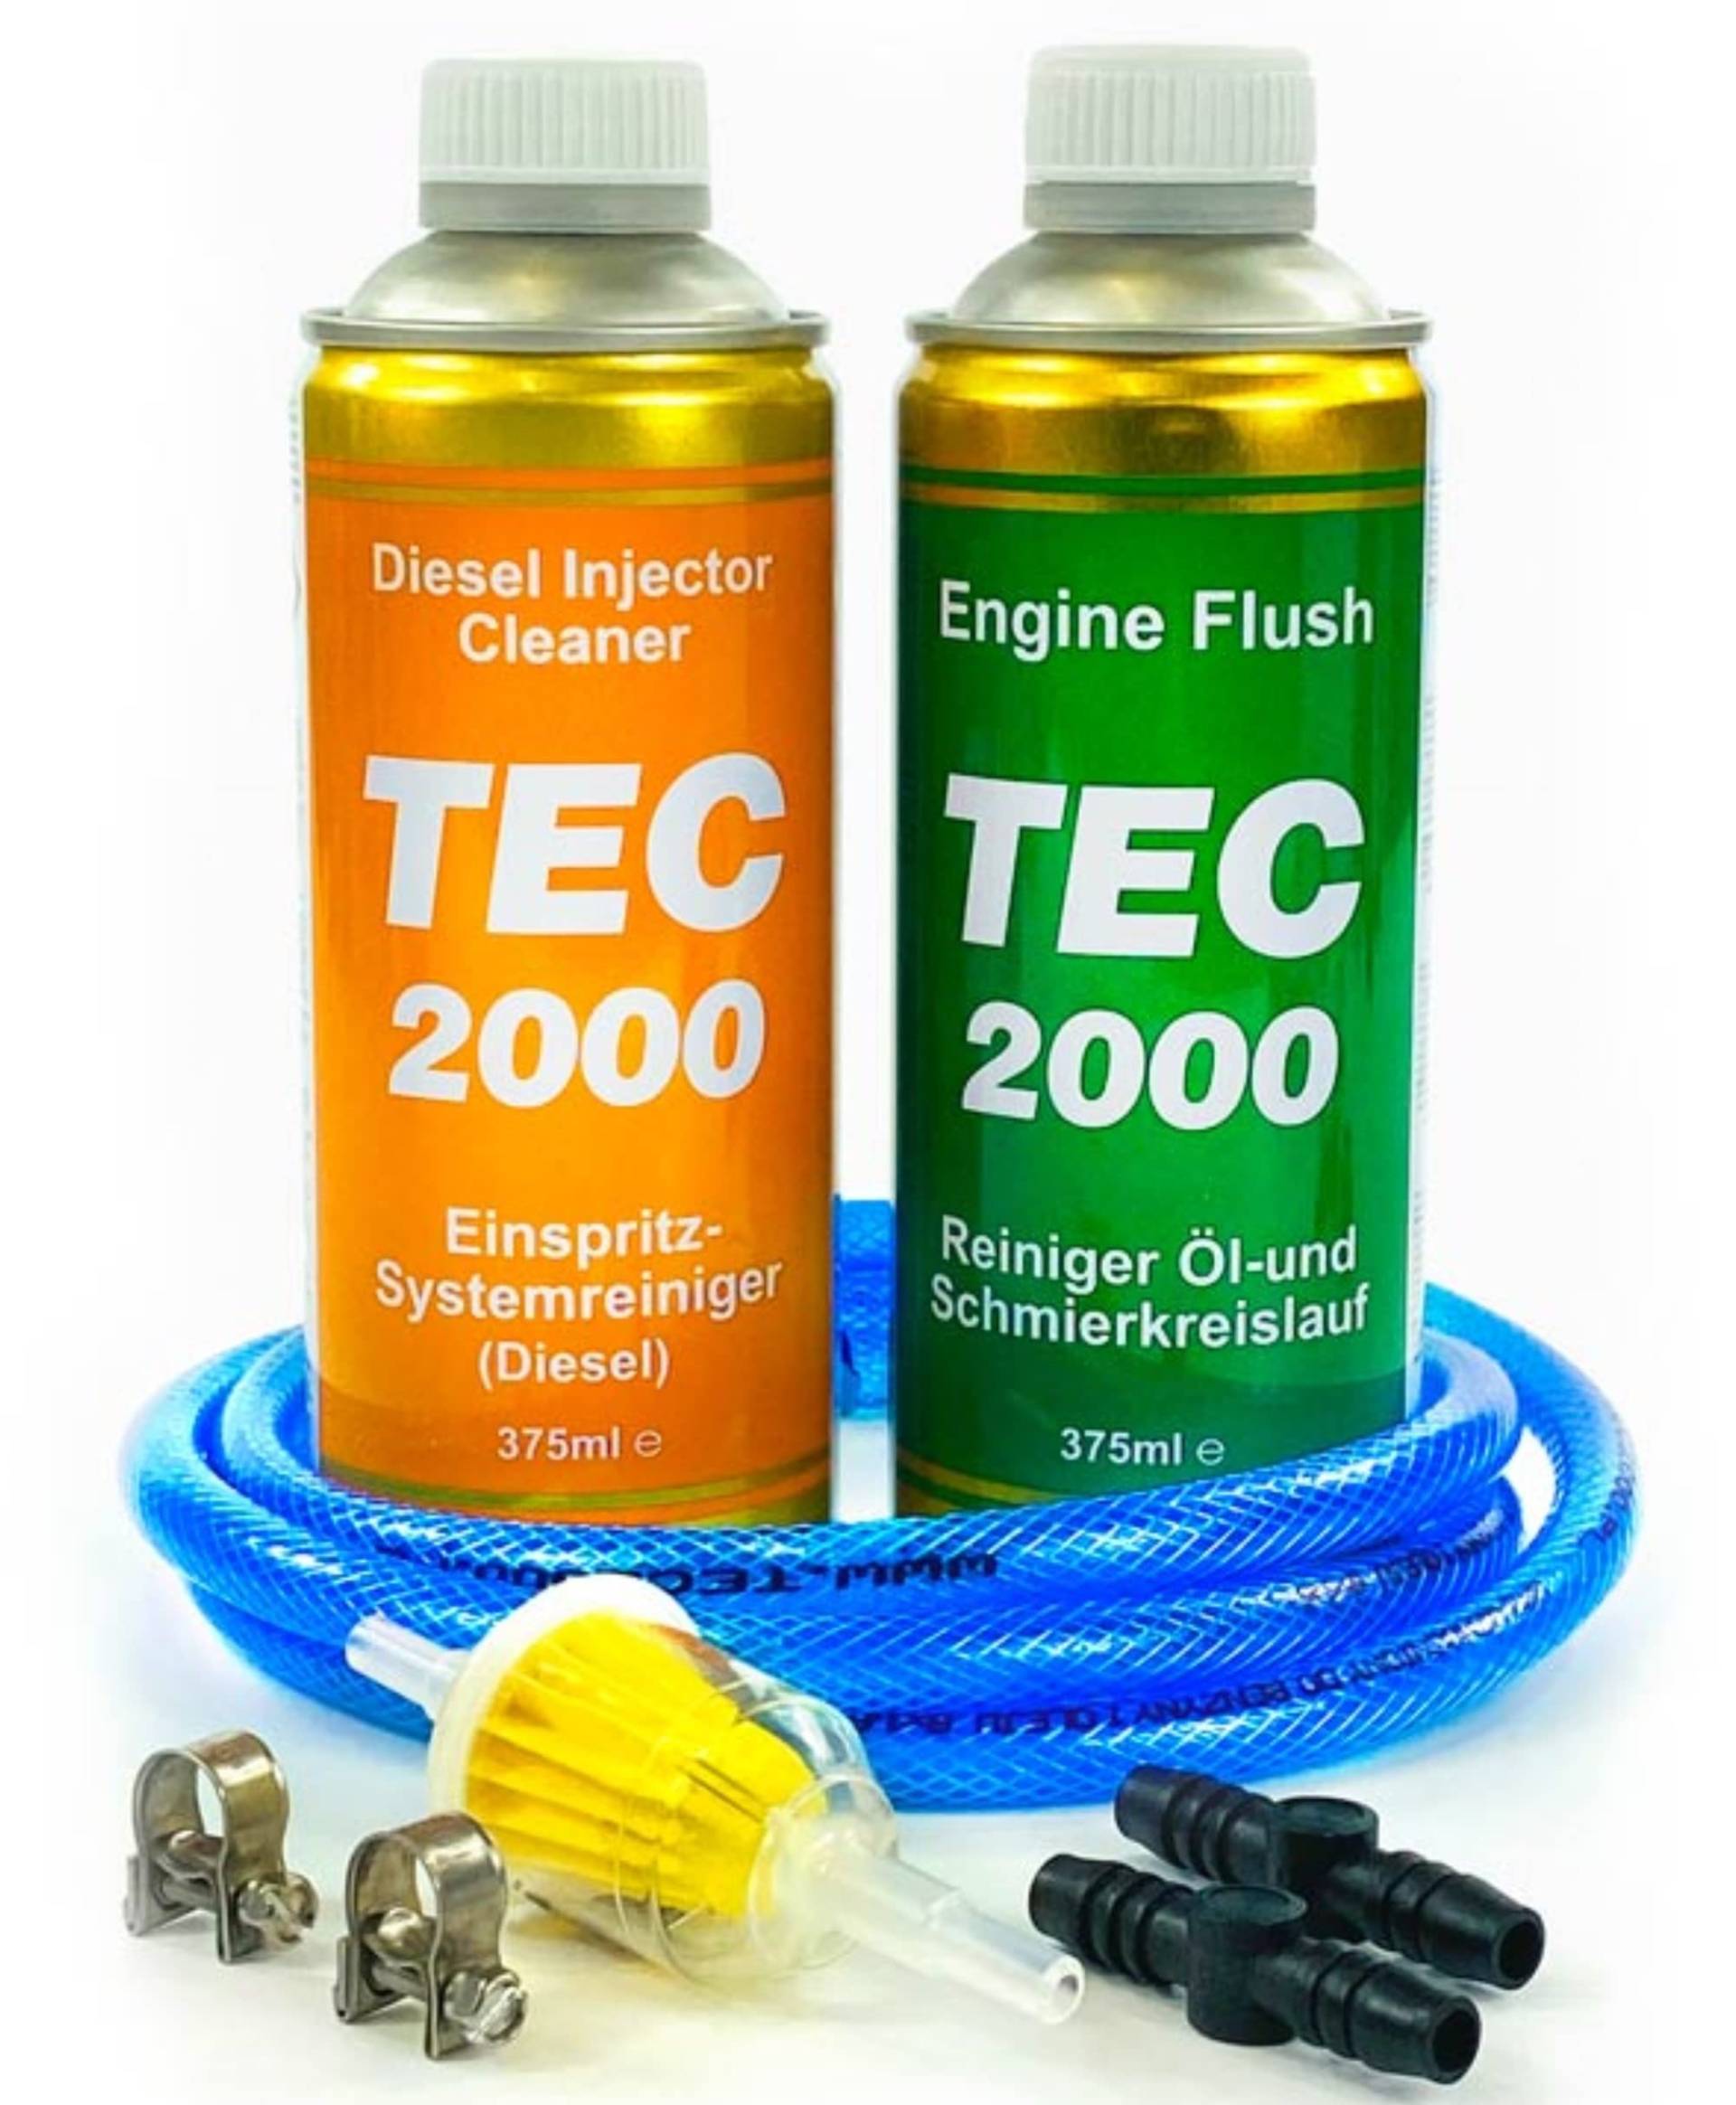 TEC 2000 Diesel Injektor Reiniger + Engine Flush Motorpflege Motorspülung Reinigung Set 750ml Einspritzdüsen Motorreiniger für Benzin oder Gasmotoren Injektionsreinigungsset, DIC von TEC 2000